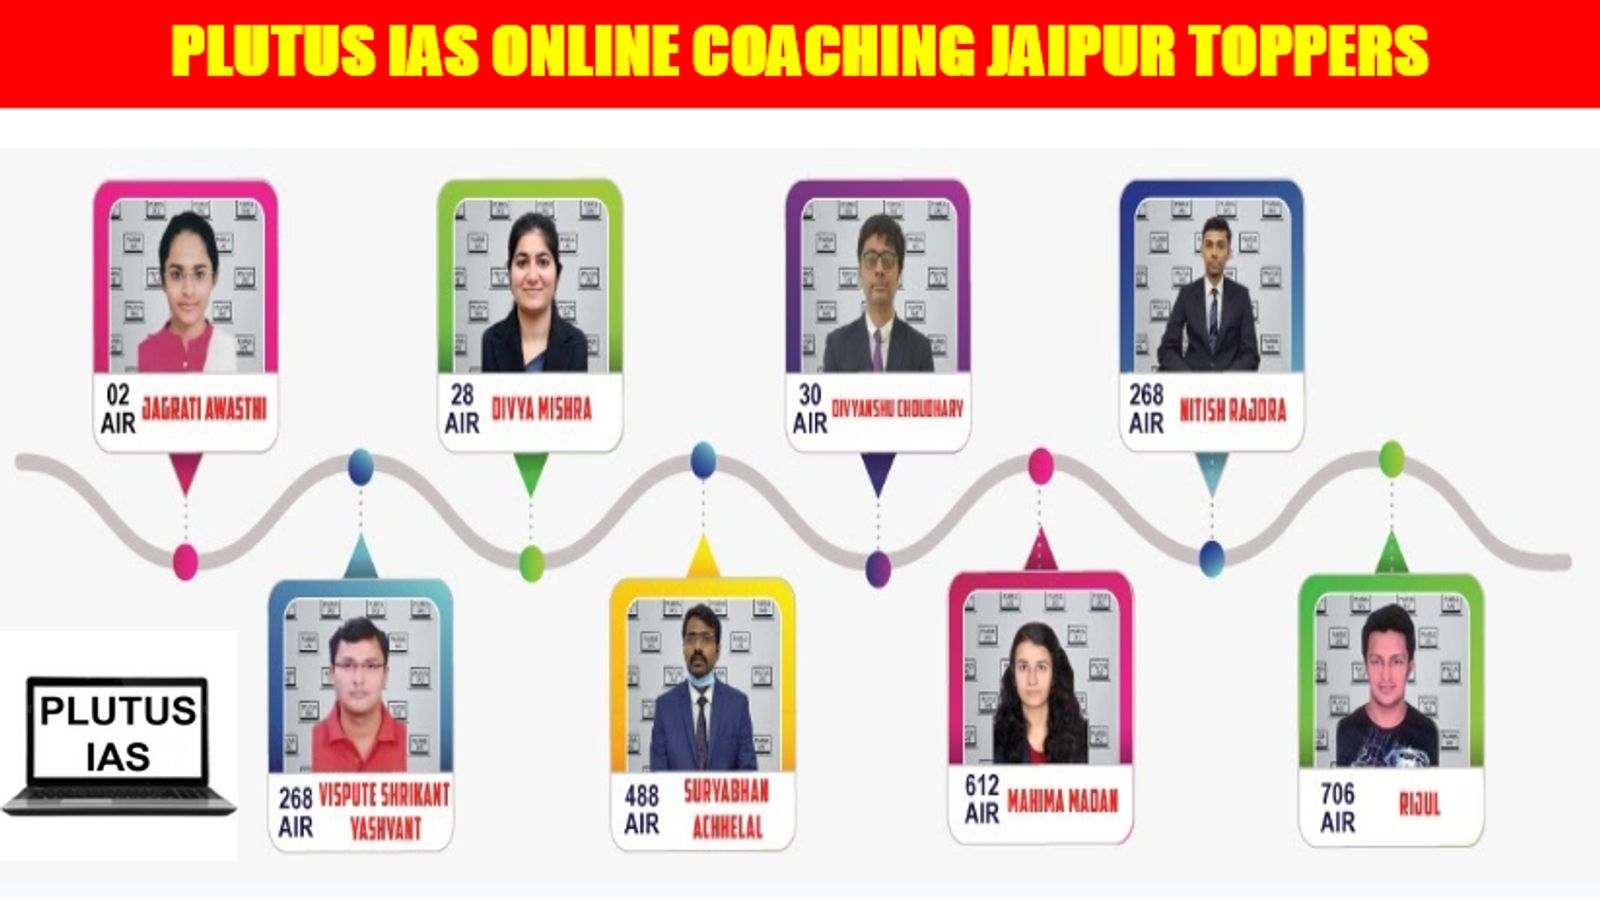 Plutus IAS Online Coaching Jaipur Toppers